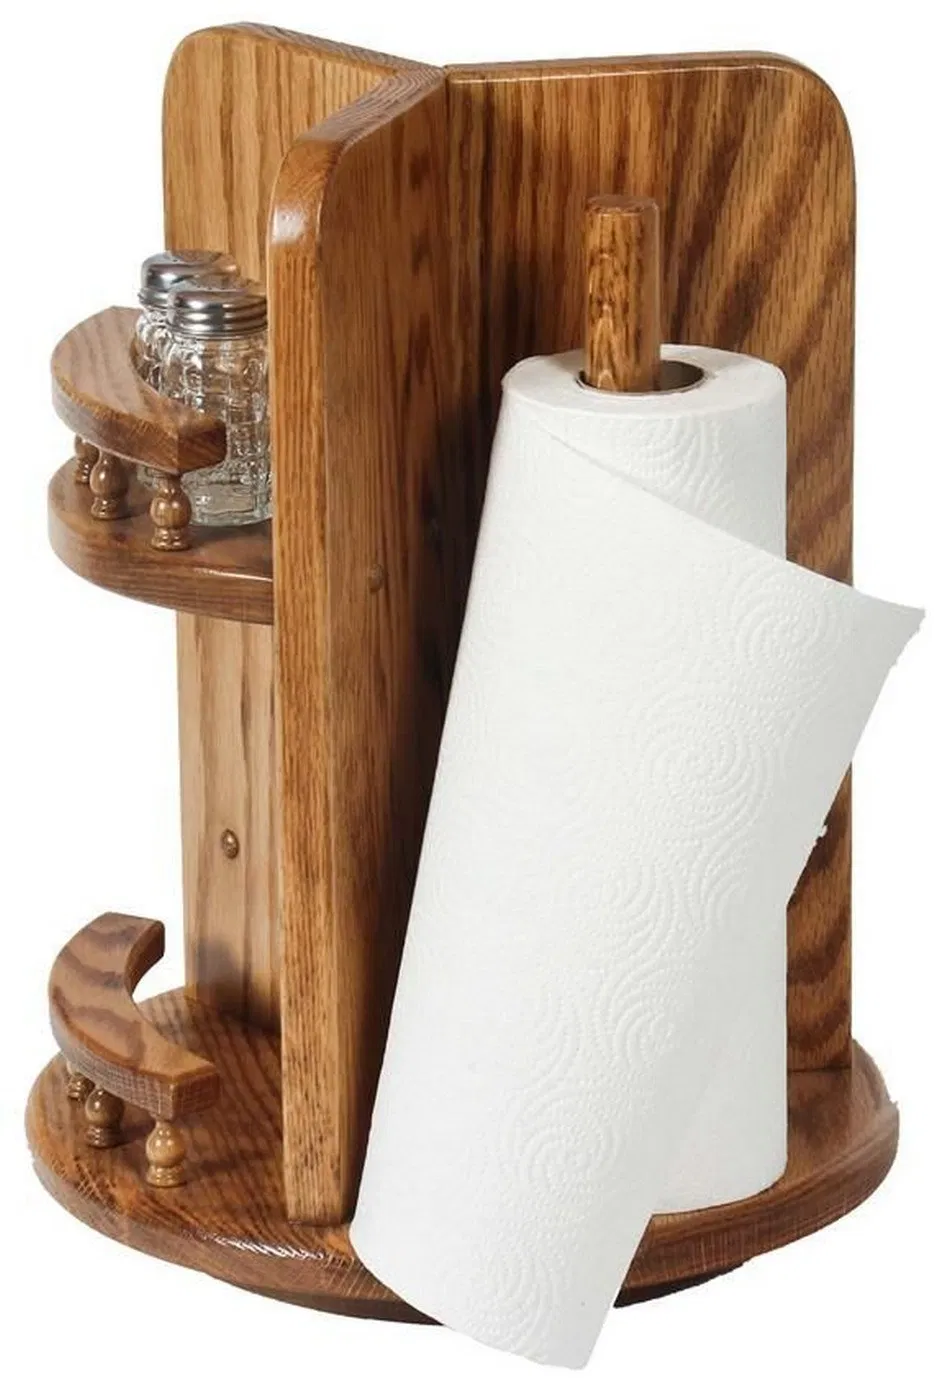 Полотенца из дерева. Artex держатель для бумажных полотенец настольный, 29-20-15. Держатель для бумажных полотенец деревянный. Деревянная подставка для бумажных полотенец. Подставка для кухонных полотенец бумажных.